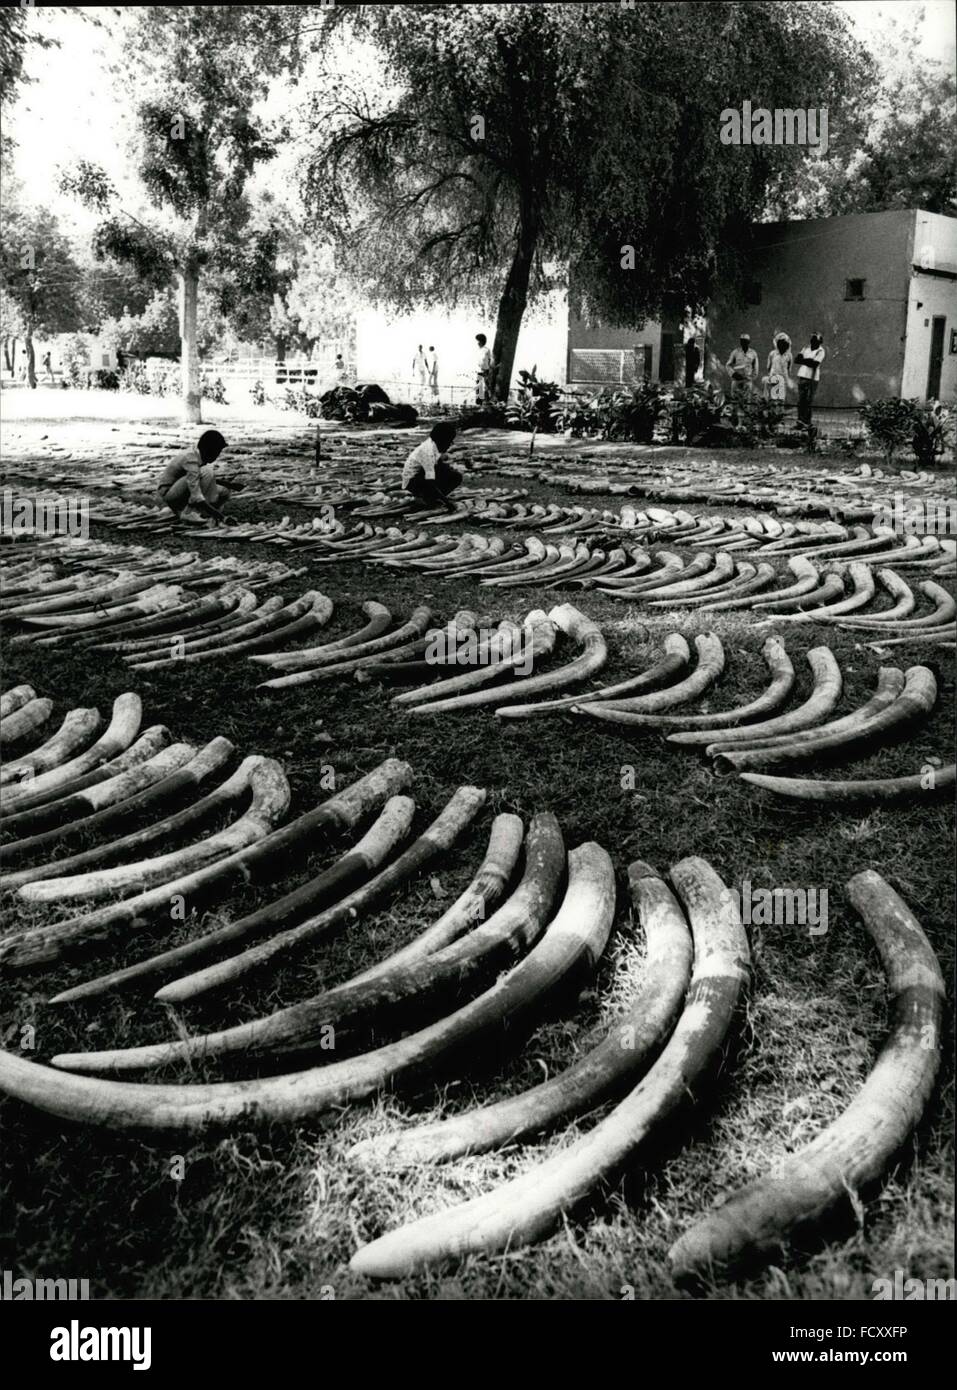 1962 - 1181 les éléphants a dû mourir pour les bénéfices de passeurs sans scrupule au port de Port Soudan Soudan récemment, la police a trouvé 11,9 tonnes d'Ivoire, qui est la valeur d'environ un million de dollars. Les passeurs avaient essayé de faire leur profit par ceux 2362 défenses d'éléphant. 1181 éléphants devait mourir. Plus tard, l'ivoire seront sur les ventes à Khartoum, capitale du Soudan. © Keystone Photos USA/ZUMAPRESS.com/Alamy Live News Banque D'Images